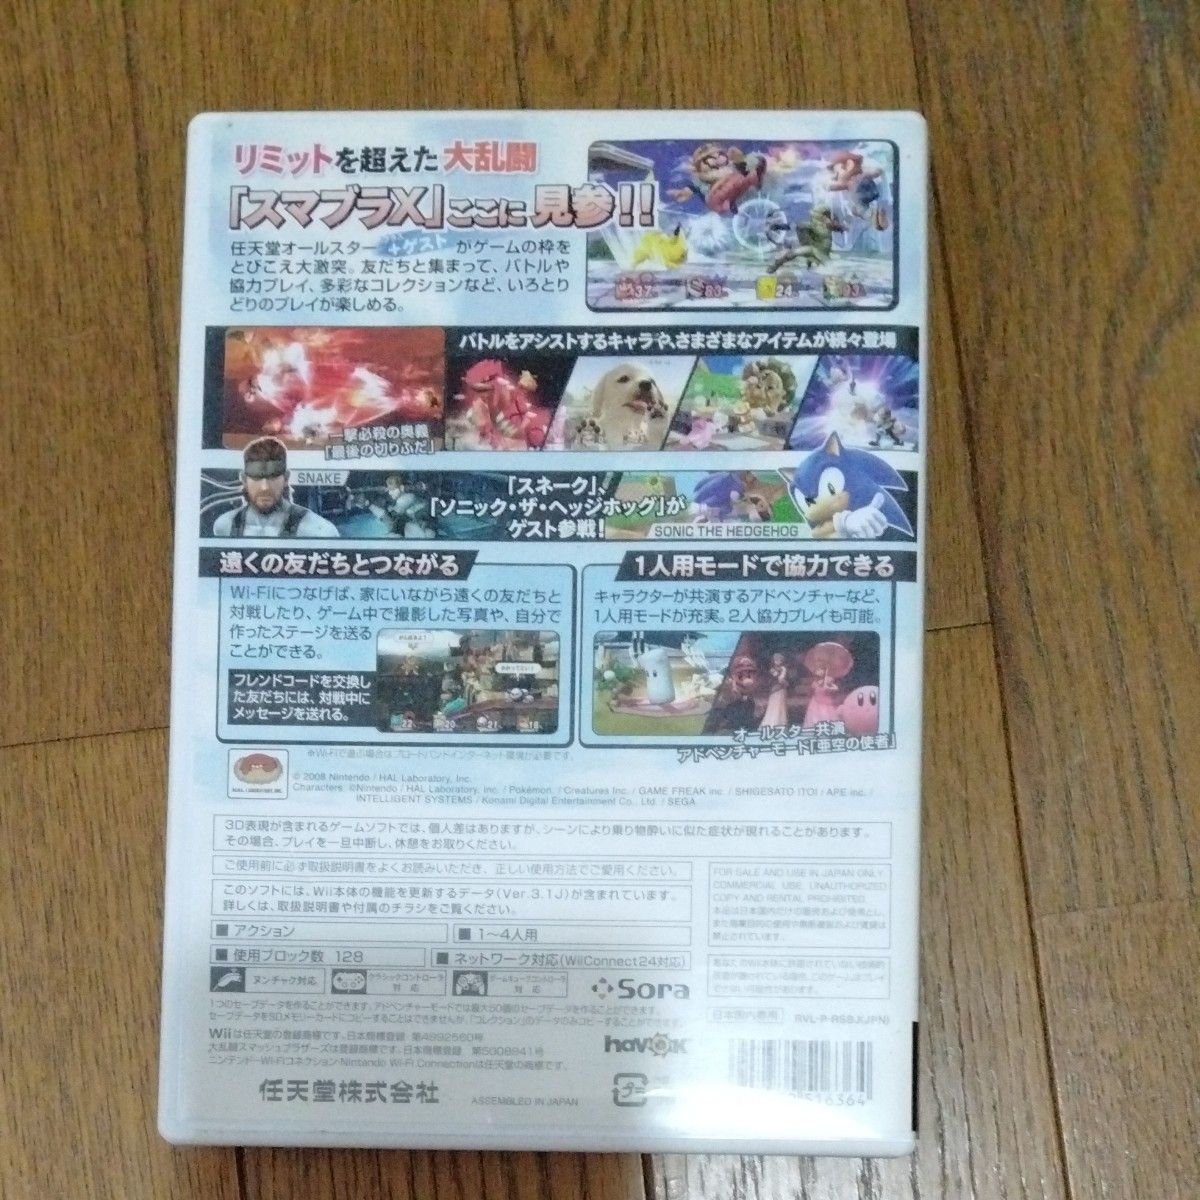 【Wii】 大乱闘スマッシュブラザーズX